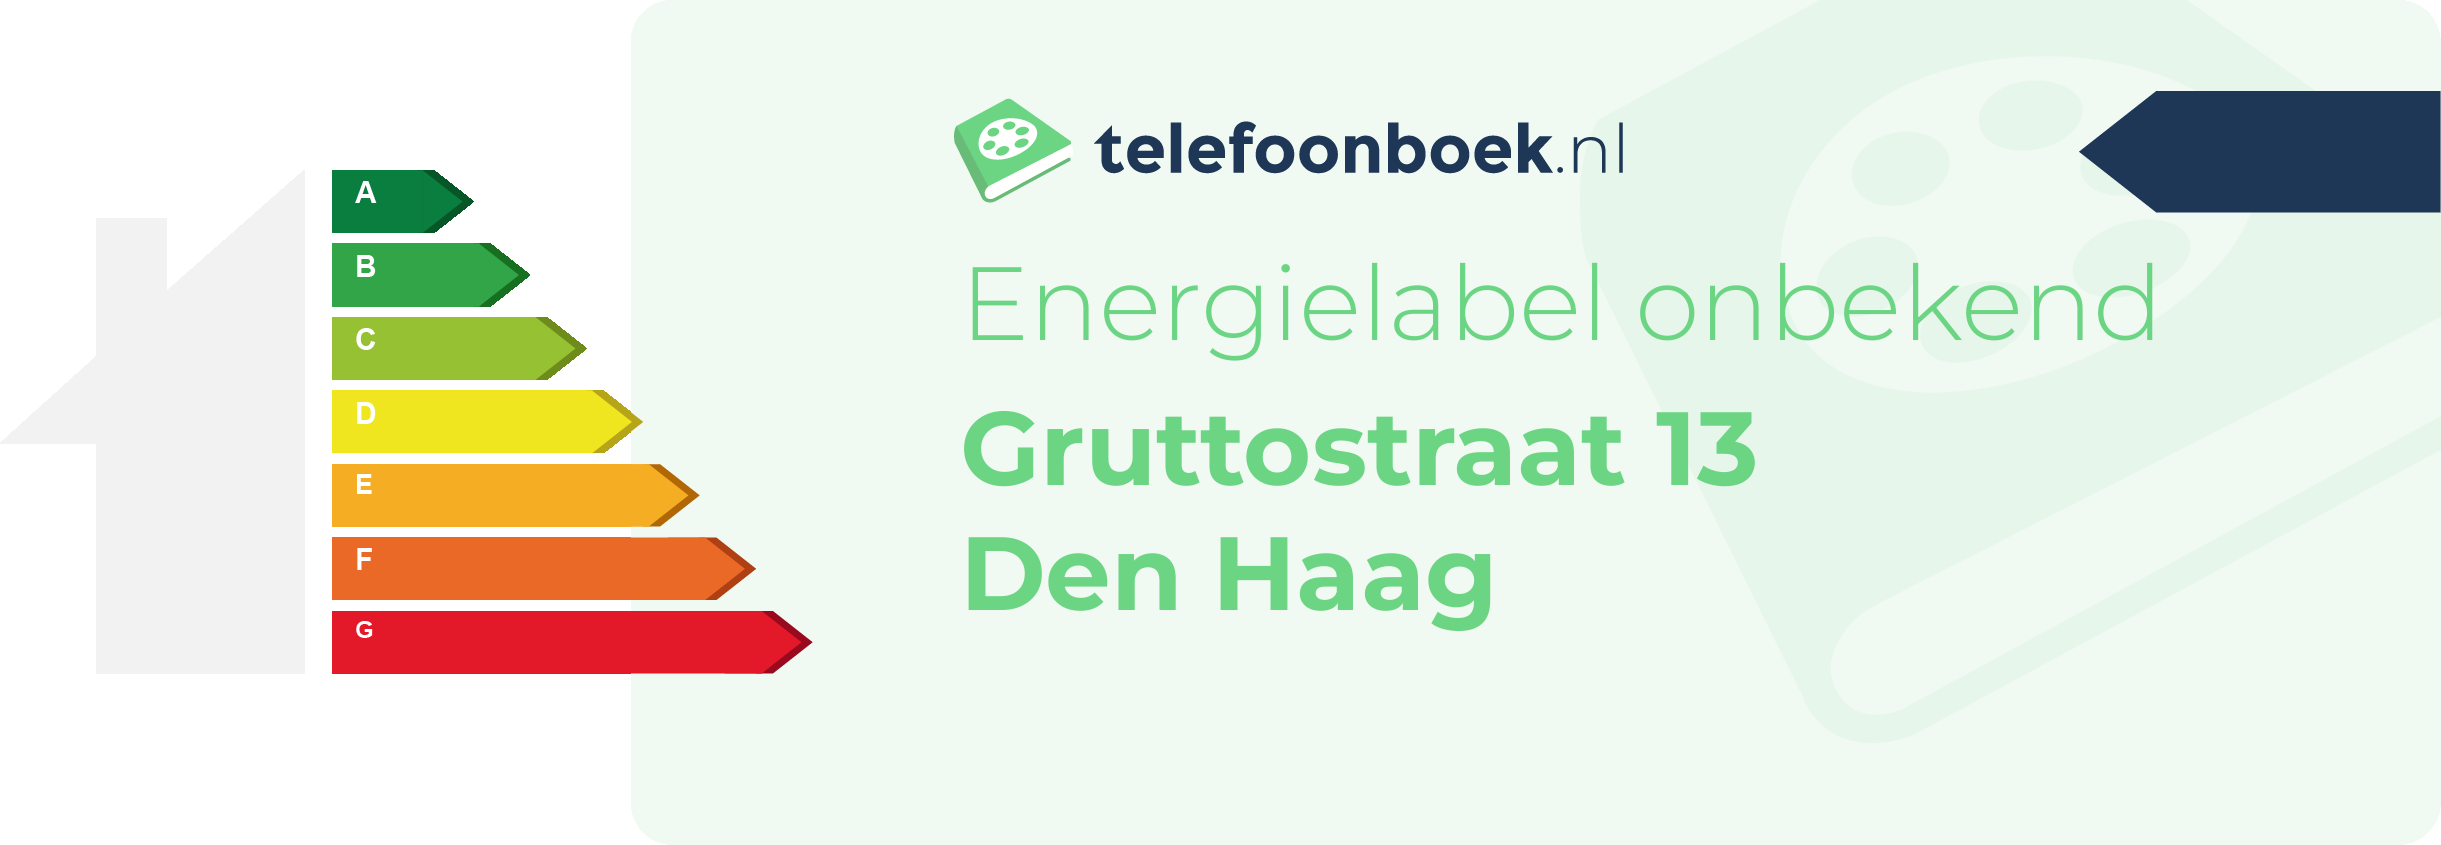 Energielabel Gruttostraat 13 Den Haag